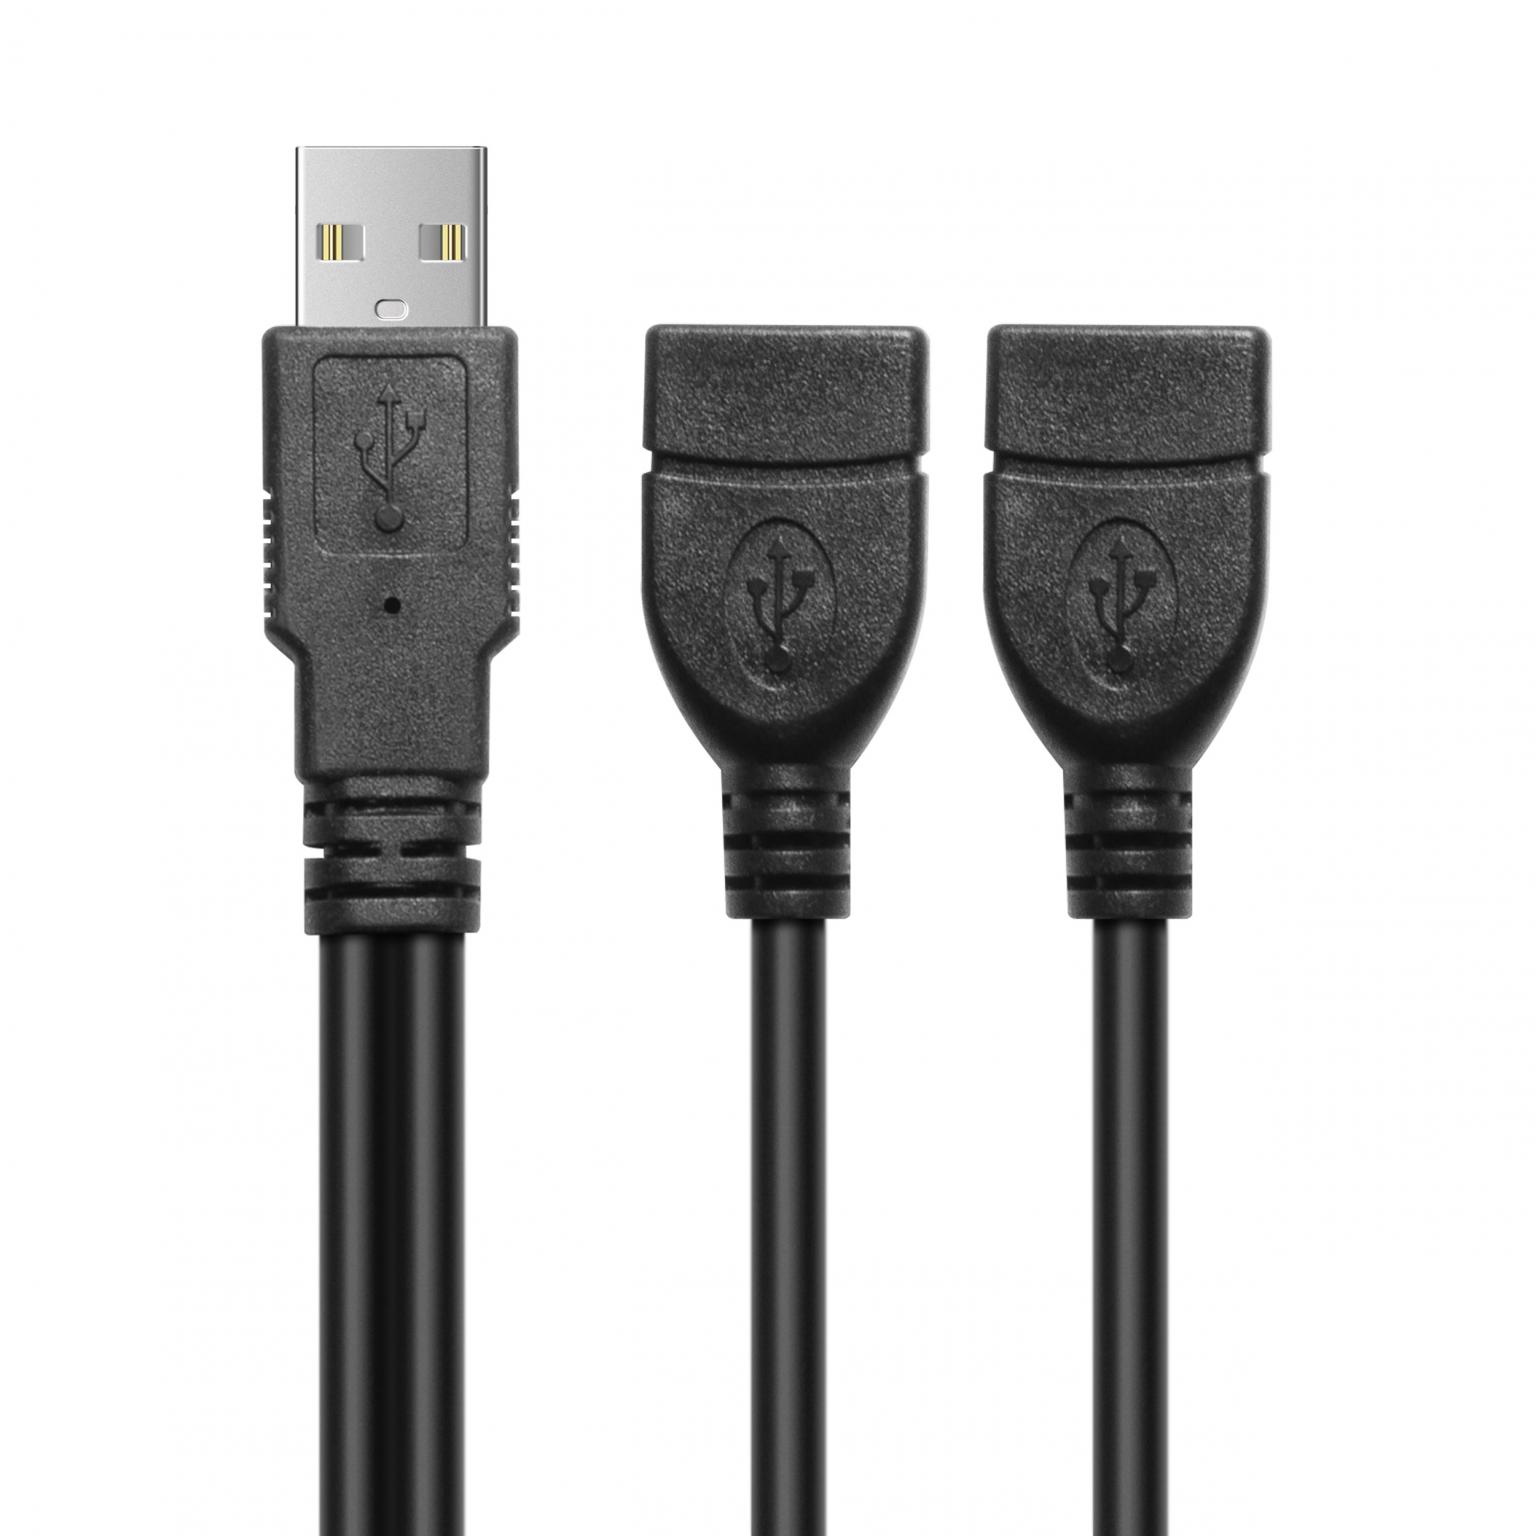 Einbau USB-Hub 2 in 1 Silbergrau USB und USB-C, silbergrau